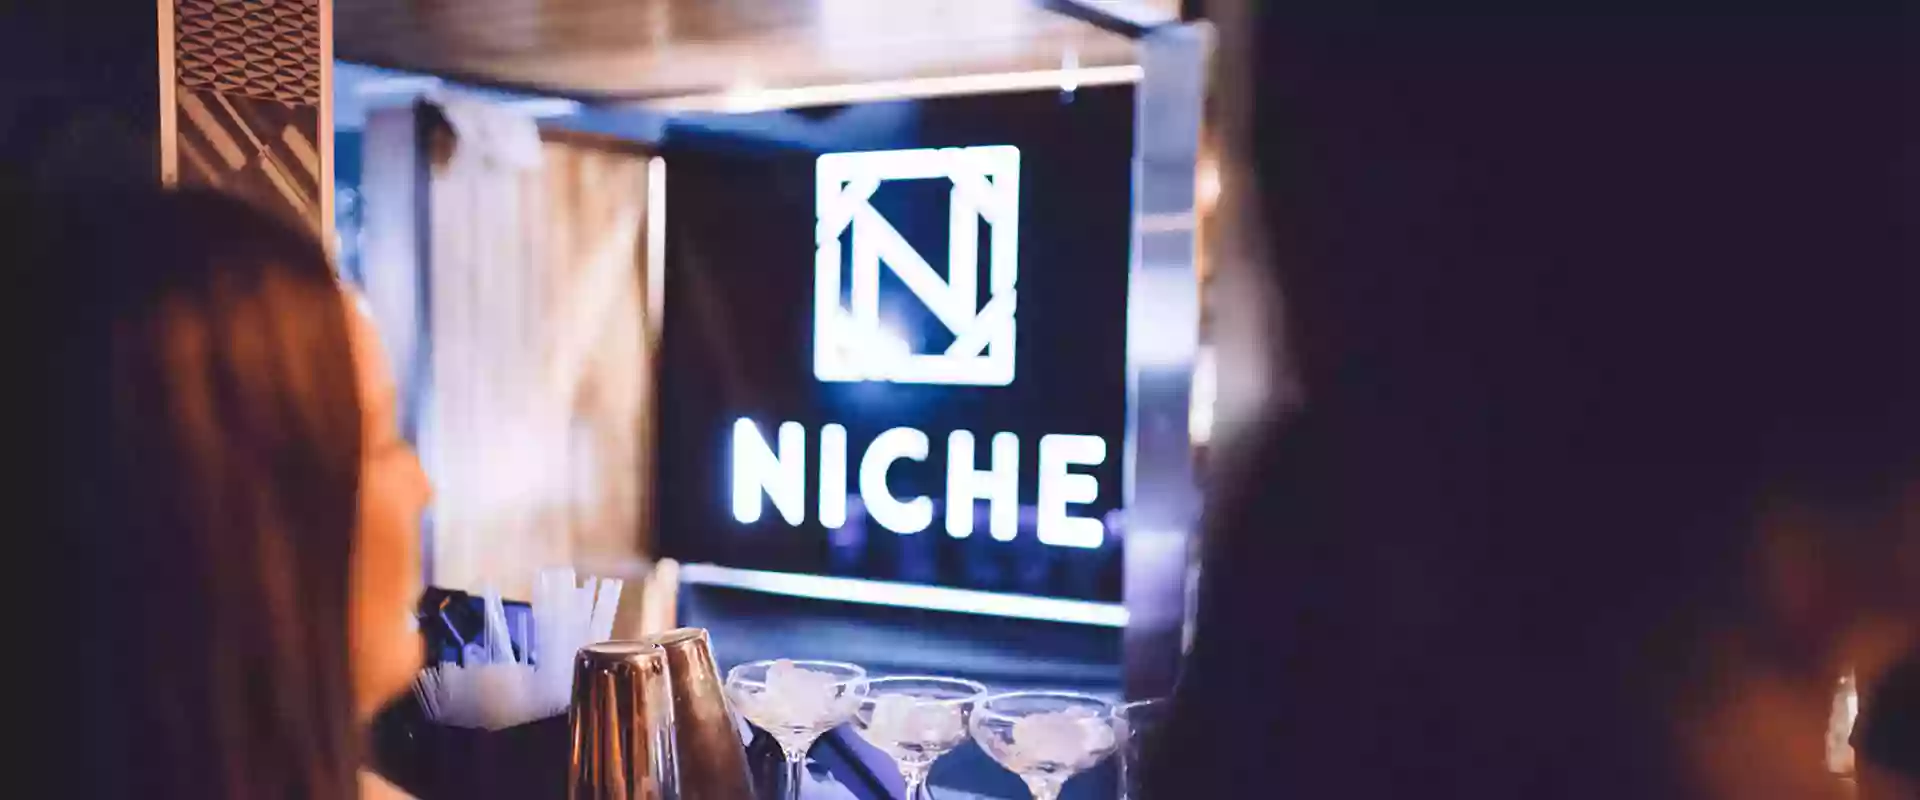 Niche Bar